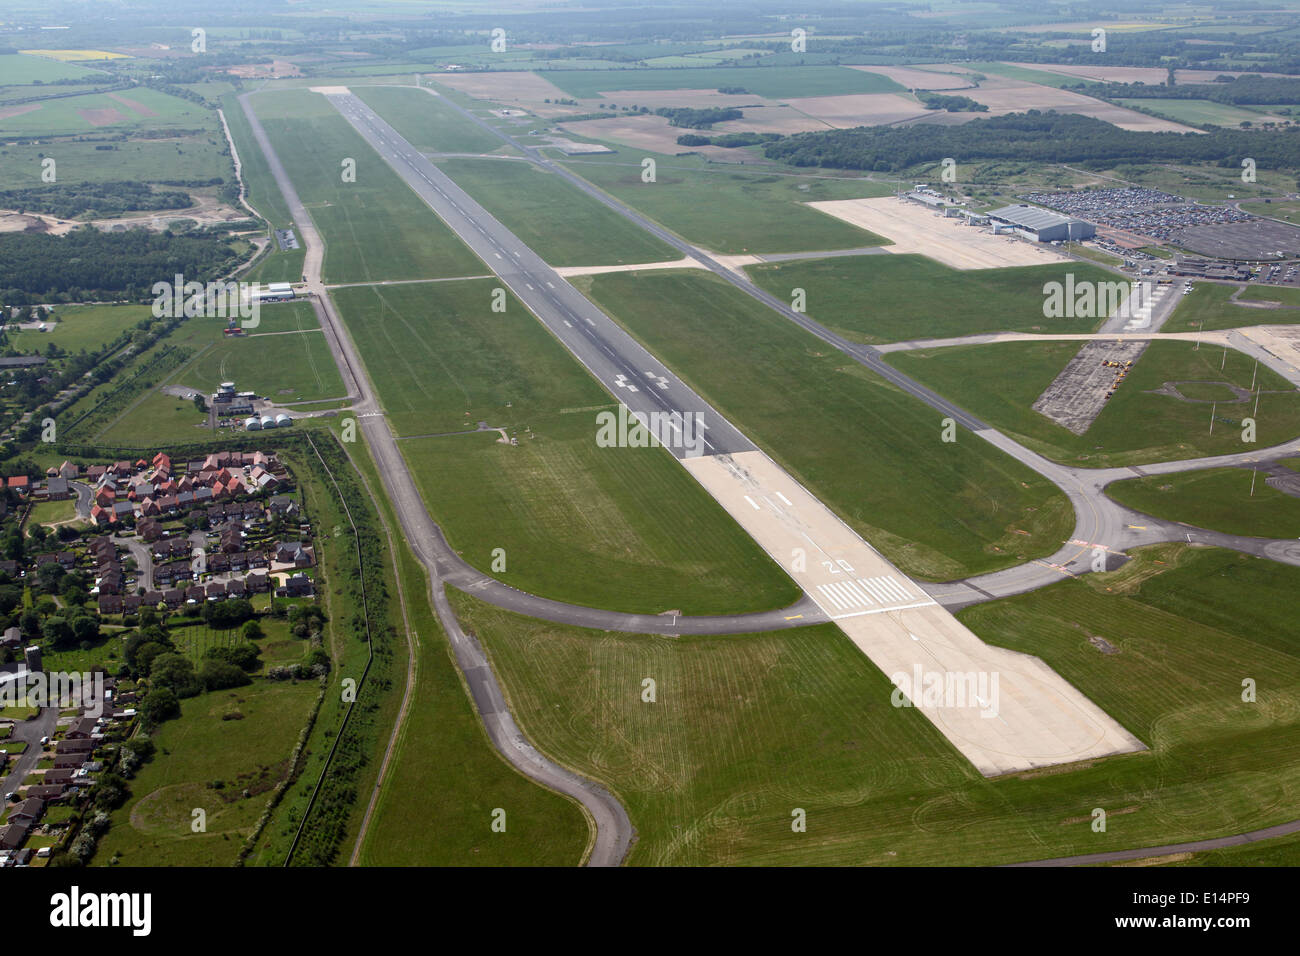 Vista aerea dello stabilimento di Doncaster Sheffield Robin Hood pista di aeroporto, in precedenza raf Finningley aerodromo militare, airbase o aeroporto Foto Stock